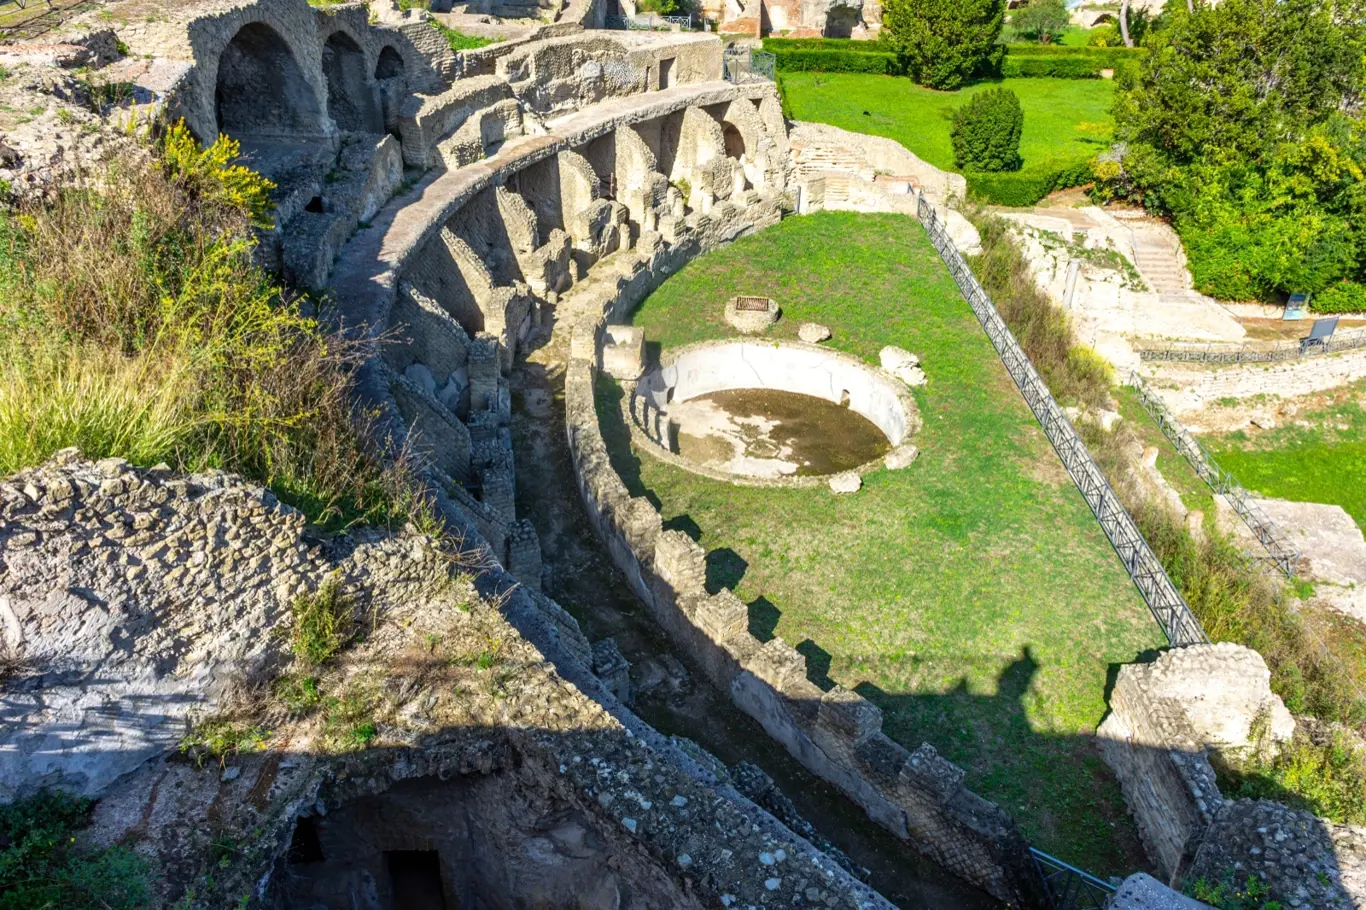 Itálie, Neapol, Baia, pohled a podrobnosti o archeologickém areálu specializovaném na lázeňské procedury starých Římanů.